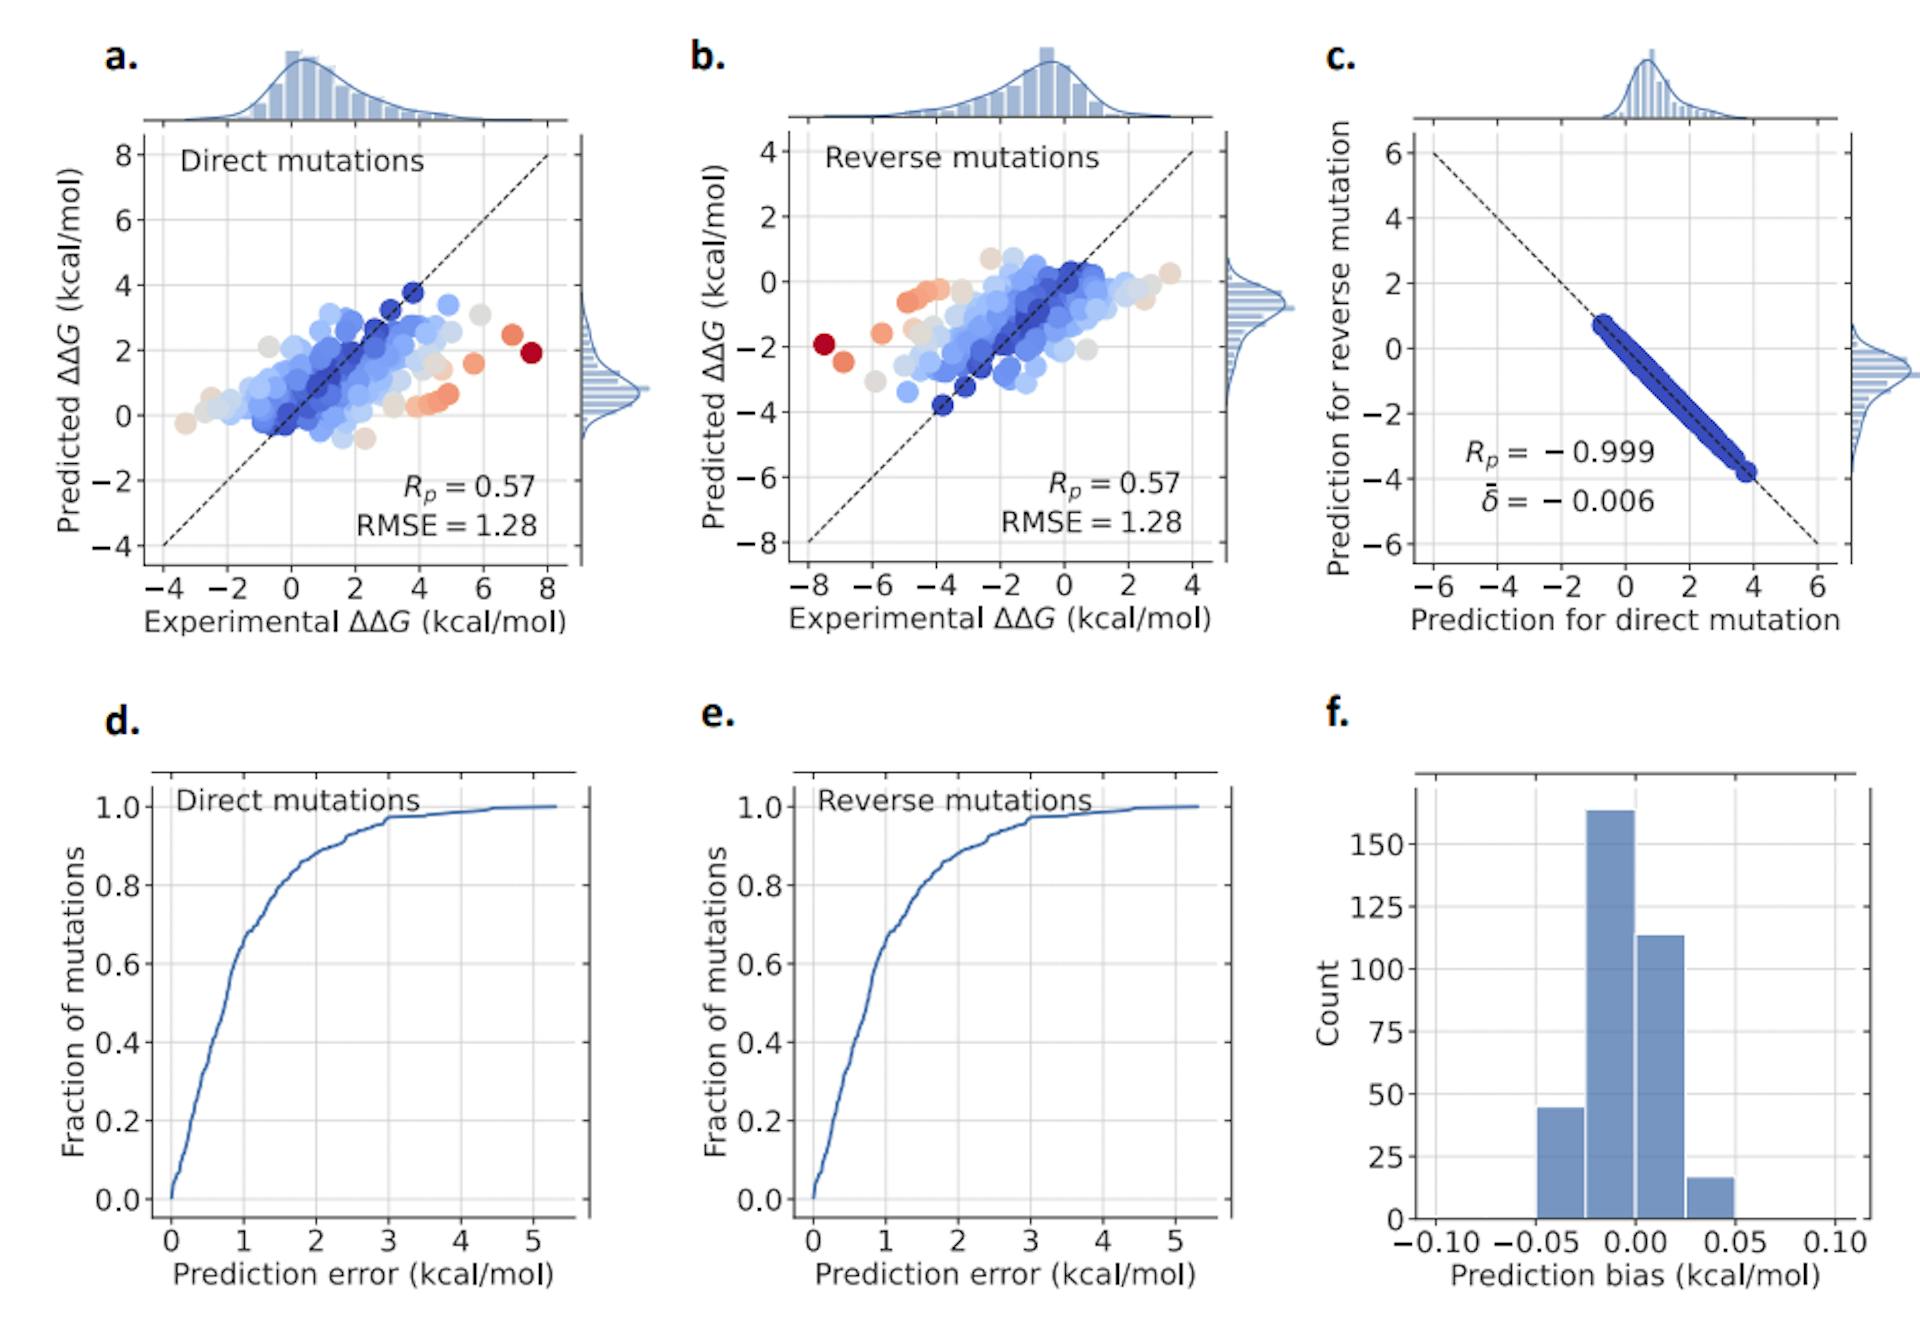 Hình 3: Kết quả của mô hình GGL-PPI2 của chúng tôi cho tập dữ liệu Ssym. Trong (a), các đột biến trực tiếp được vẽ, trong khi (b) trình bày kết quả cho các đột biến ngược. Phổ màu, từ xanh lam đến đỏ, biểu thị độ chính xác dự đoán tương ứng—trong đó màu xanh lam biểu thị độ chính xác cao hơn và màu đỏ biểu thị độ chính xác thấp hơn. MỘT